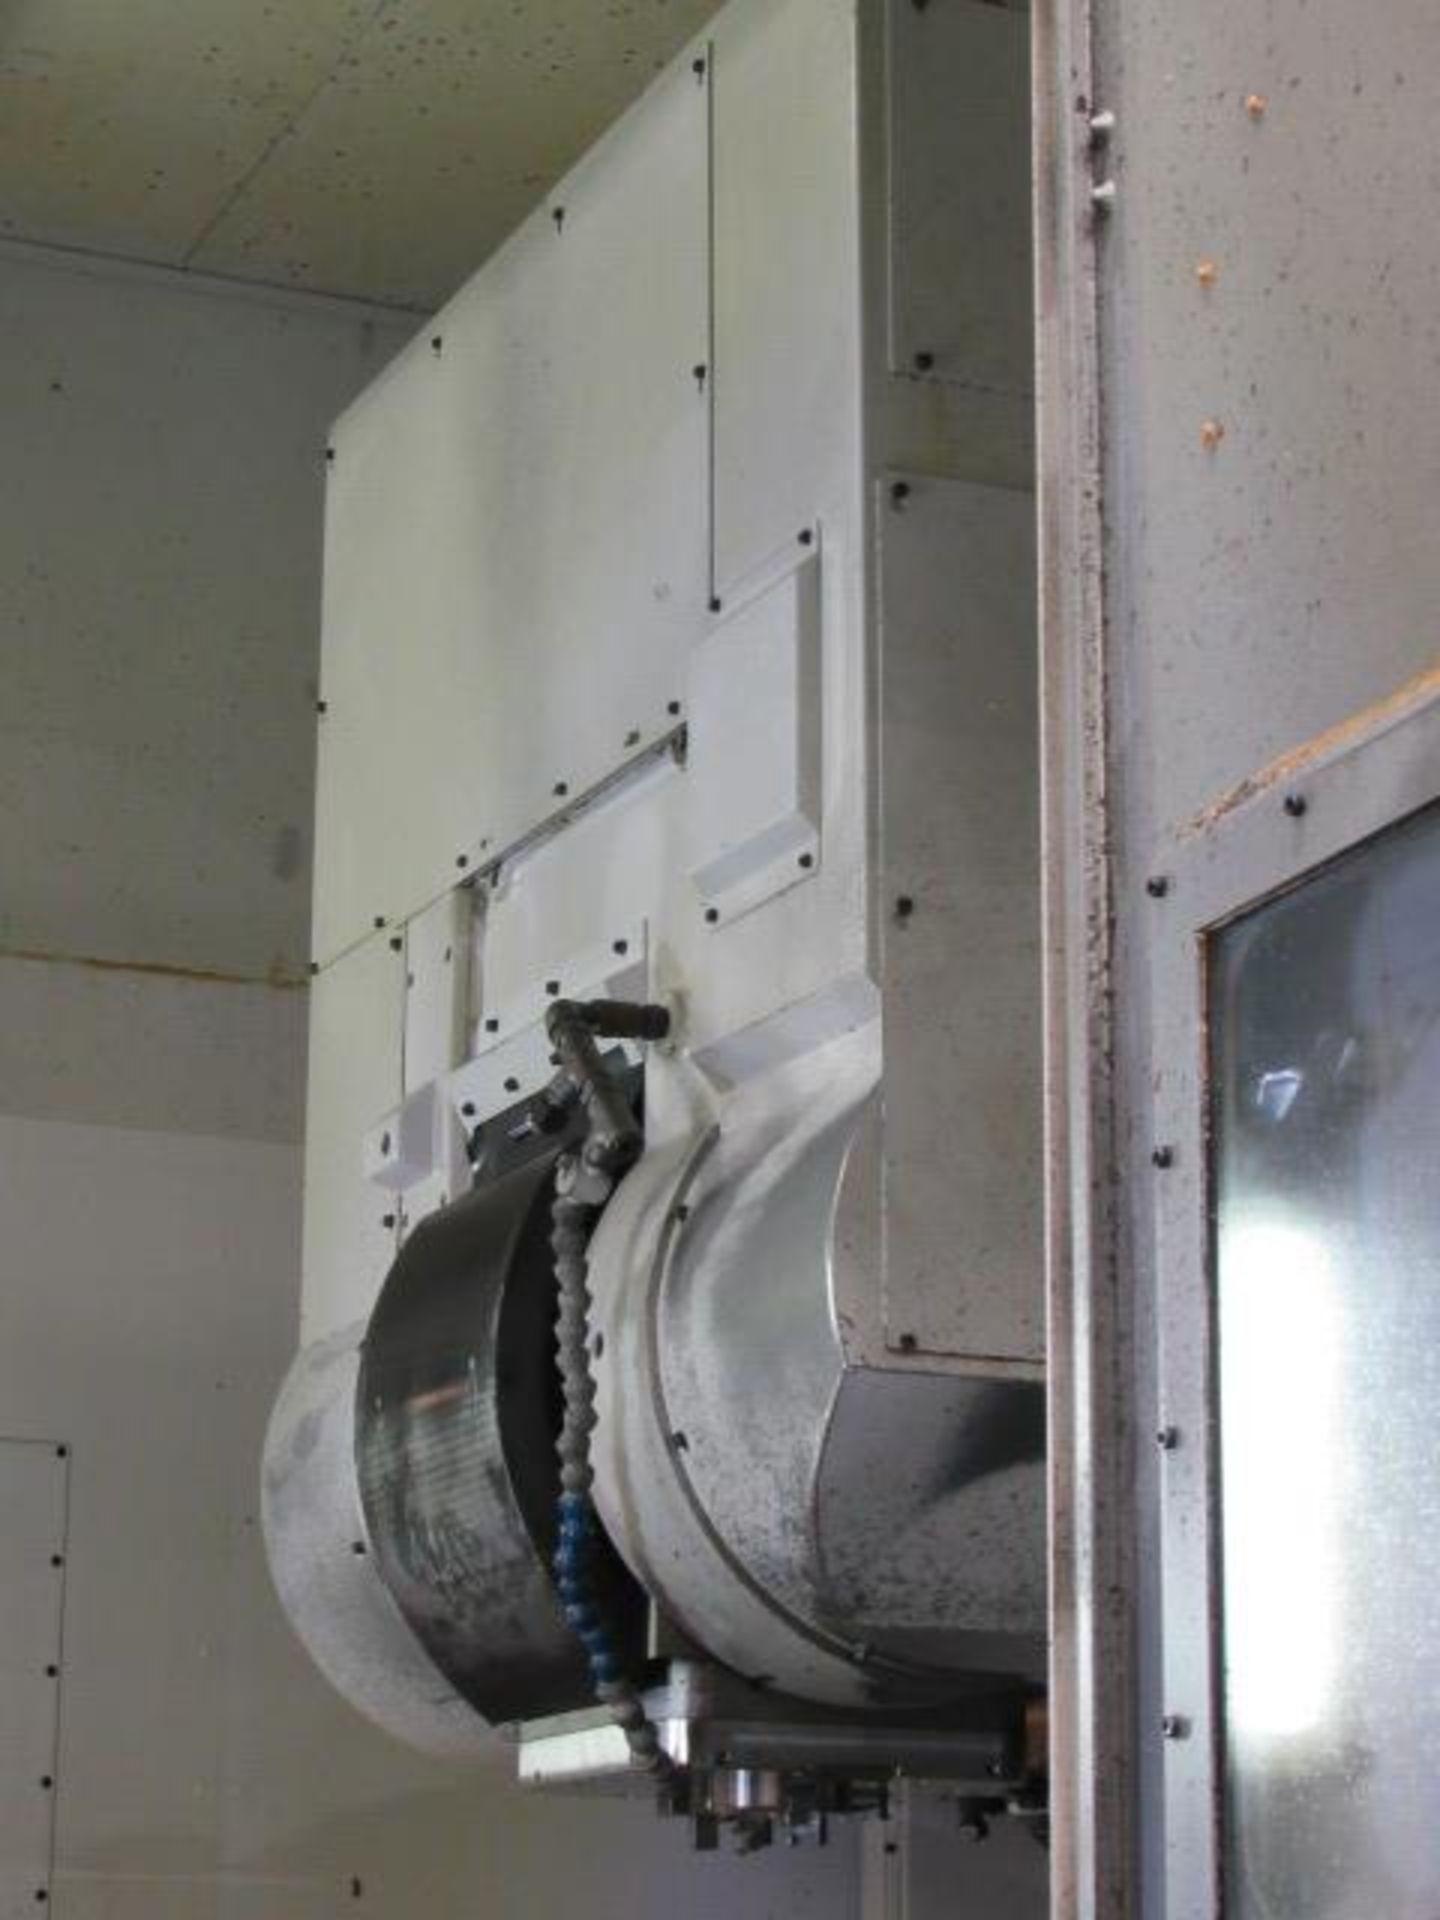 Okuma VTM-120YB 5-Axis CNC Vertical Turning Center - Image 8 of 12